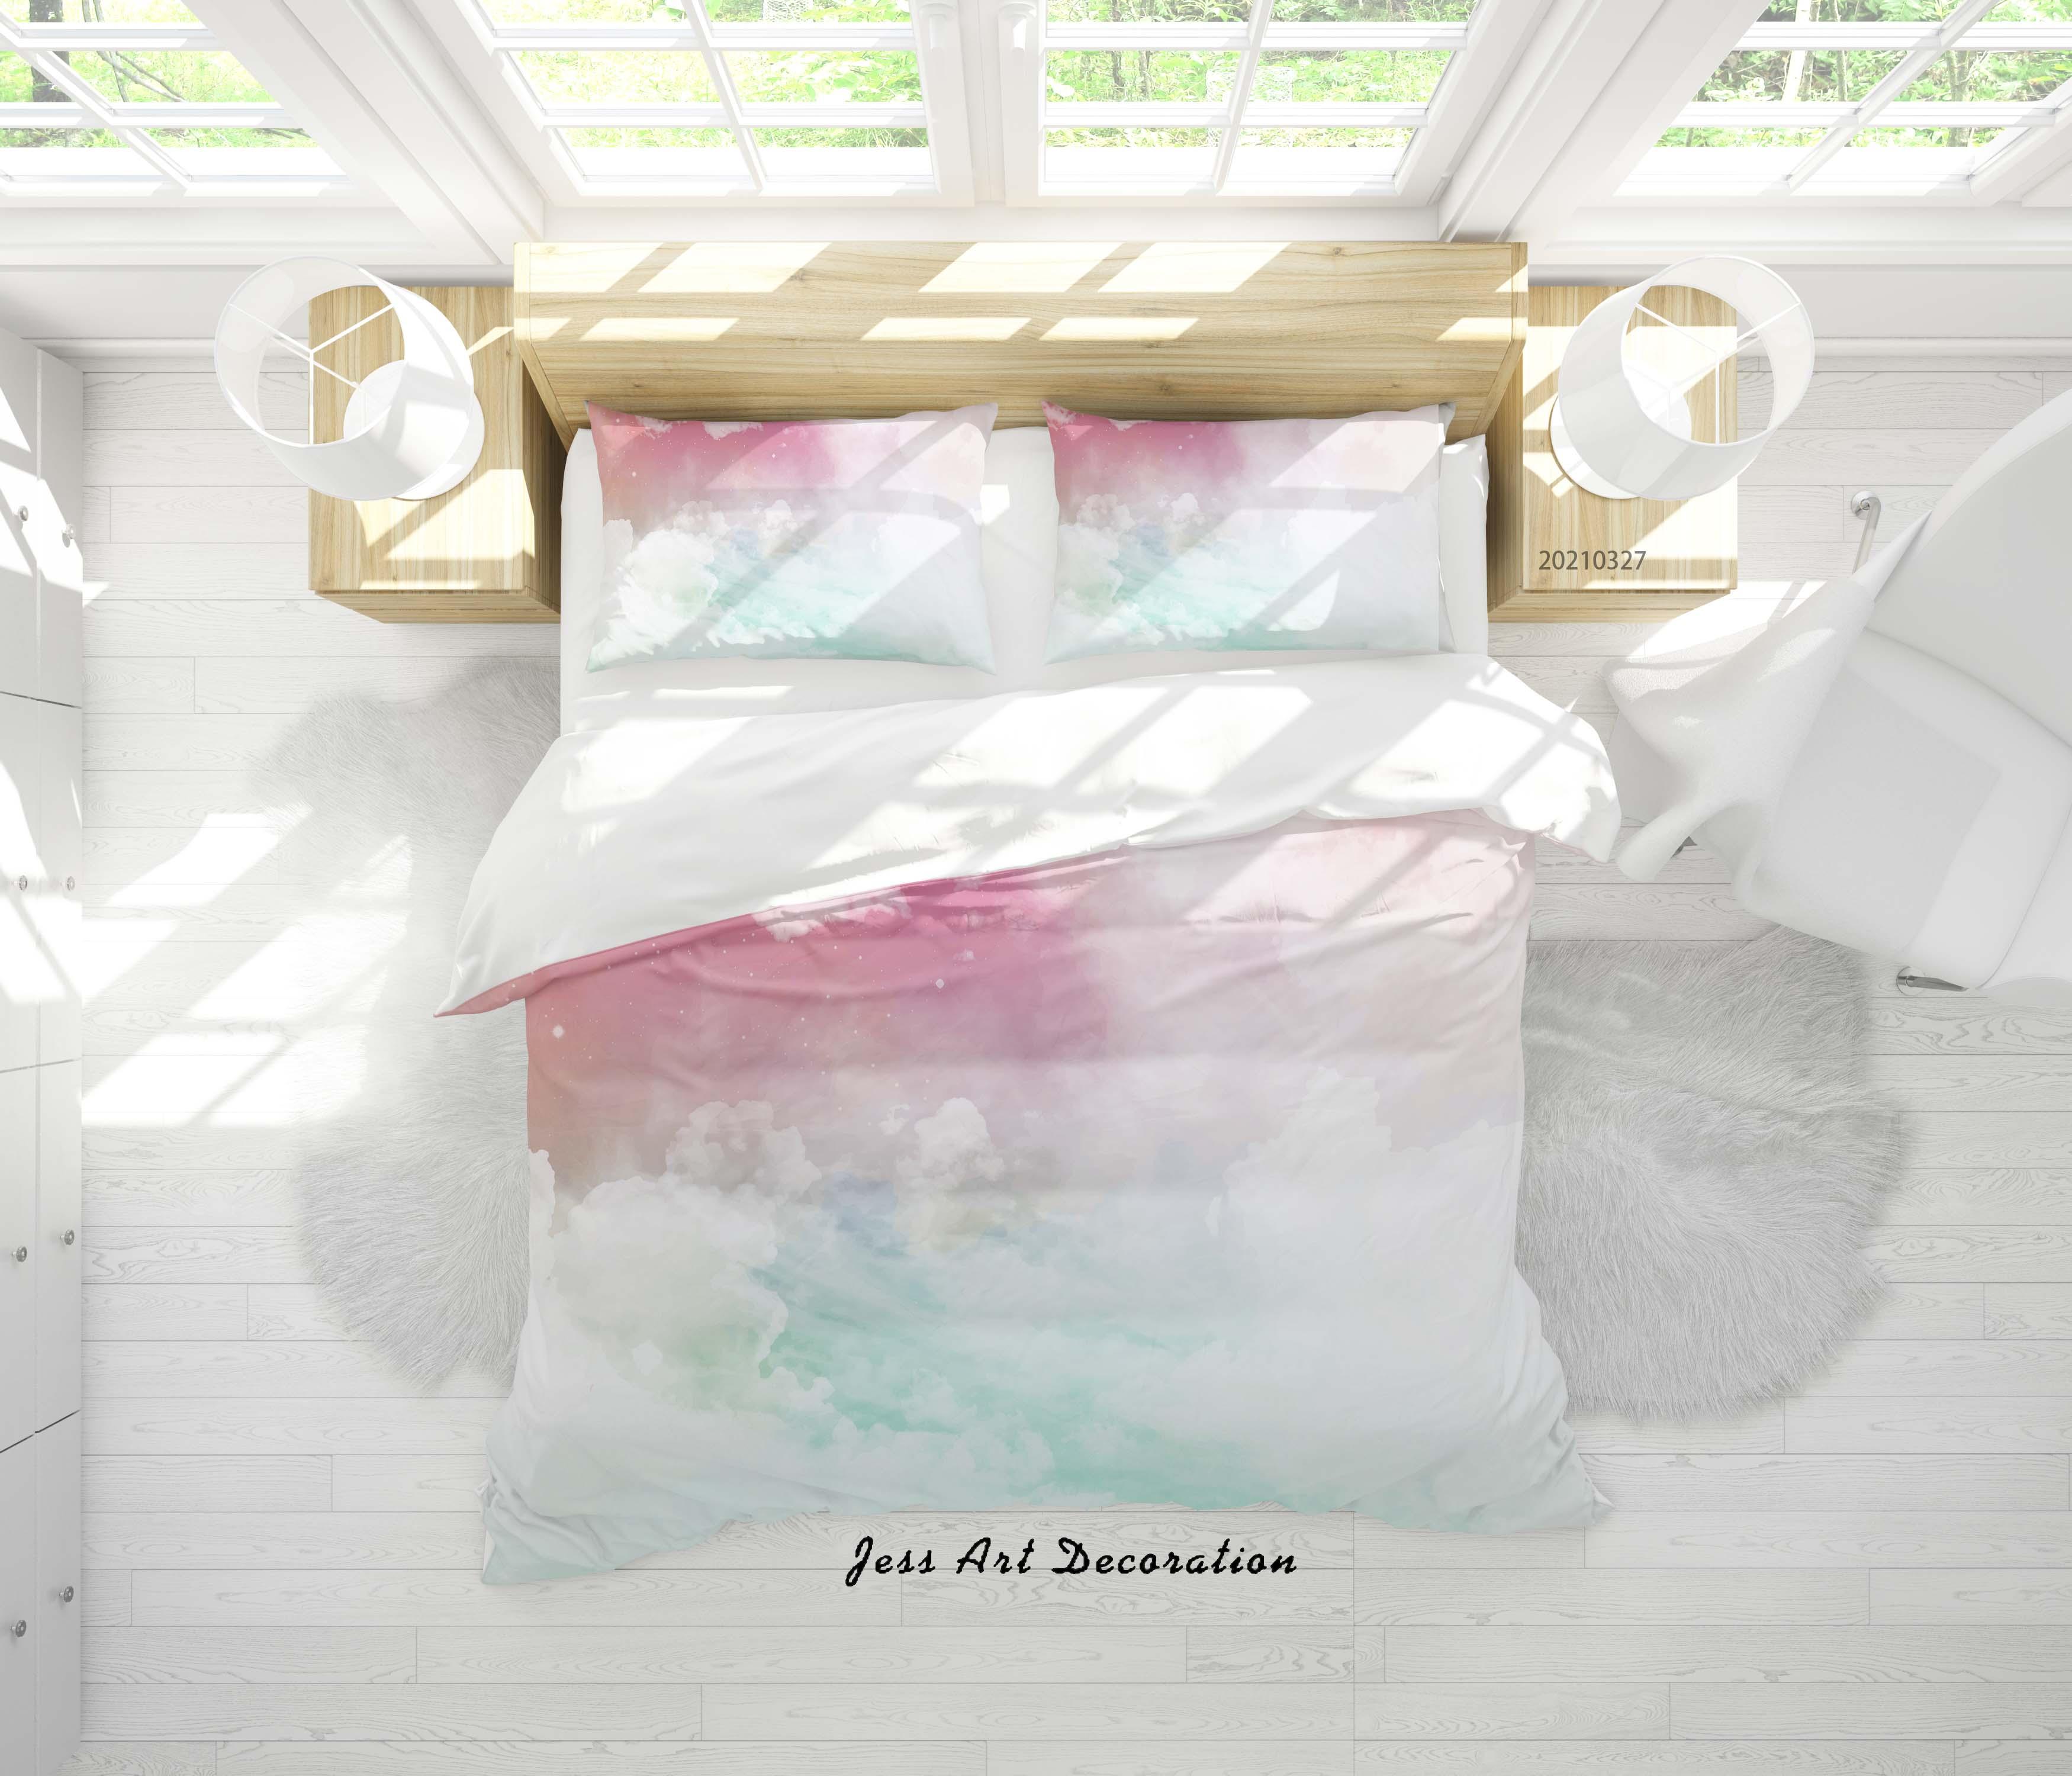 3D Watercolor Sky Cloud Quilt Cover Set Bedding Set Duvet Cover Pillowcases 61- Jess Art Decoration